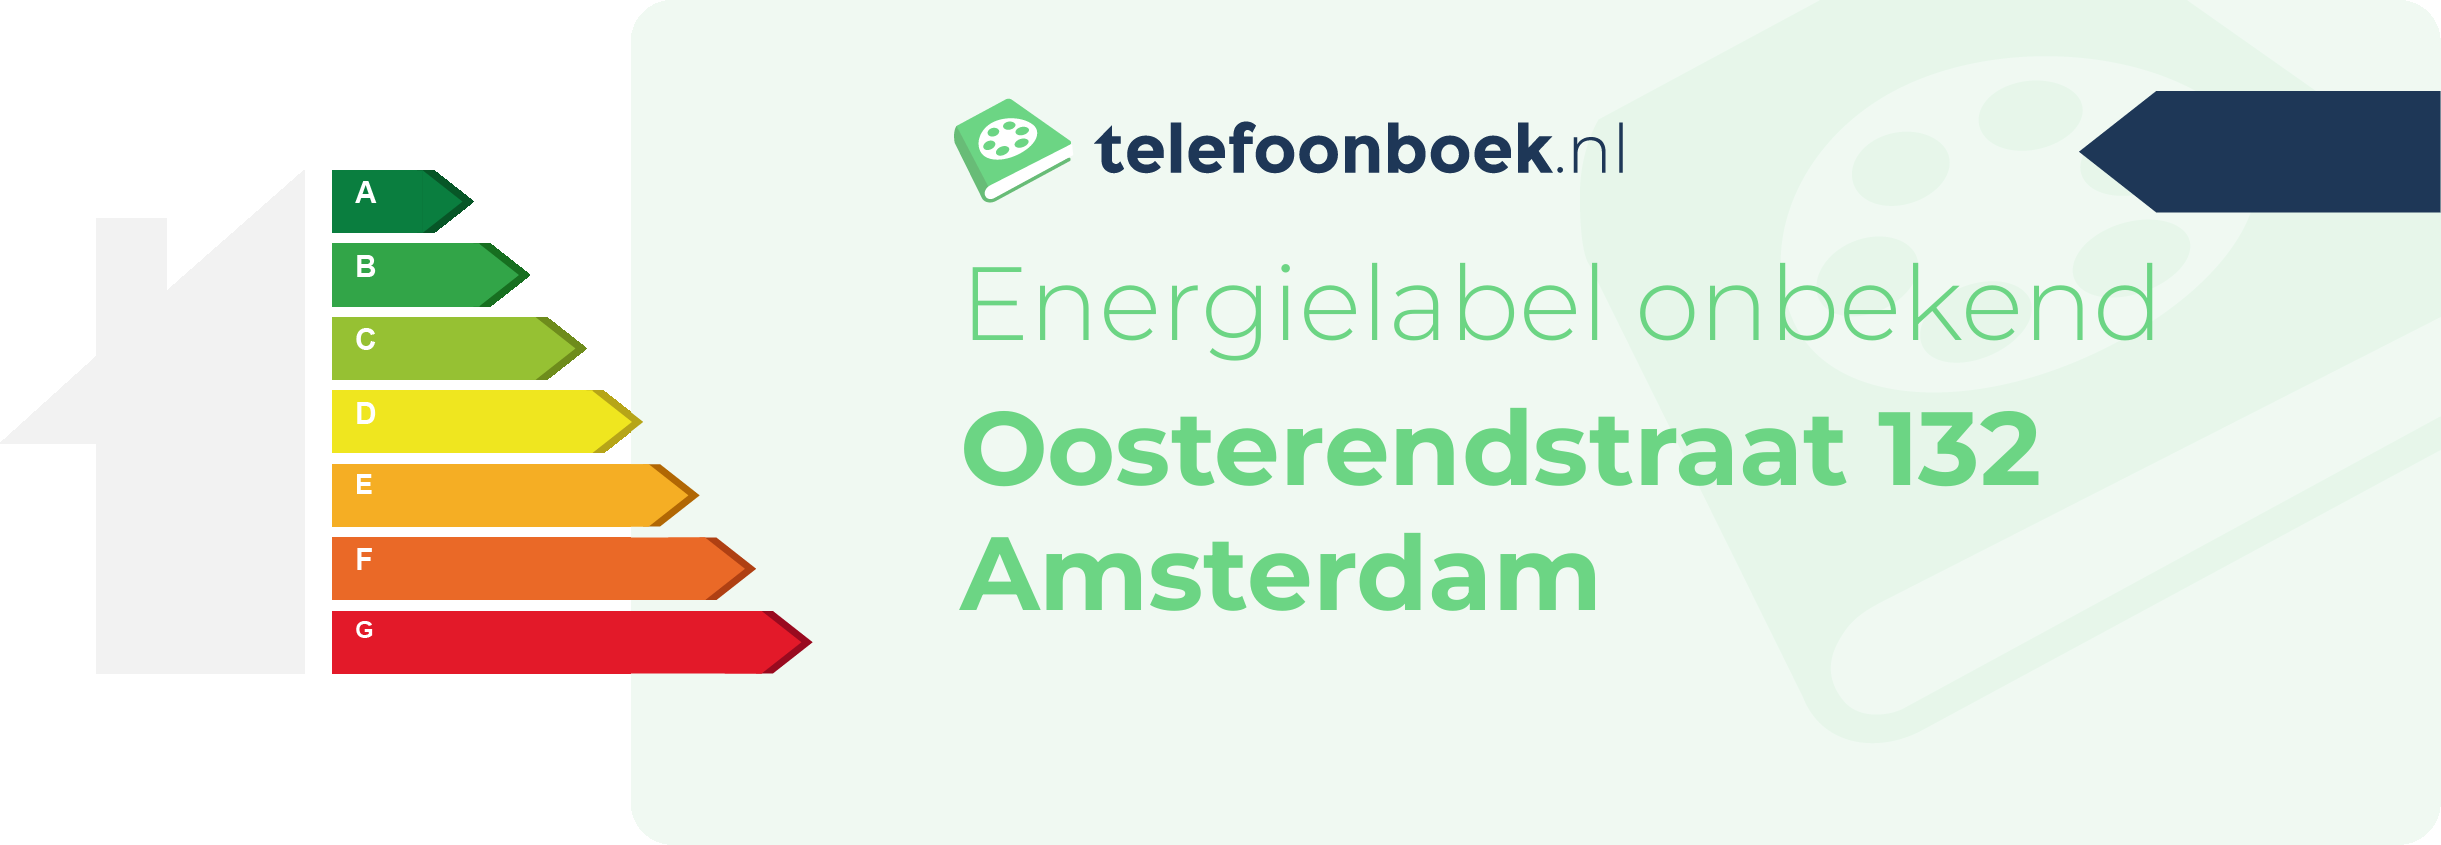 Energielabel Oosterendstraat 132 Amsterdam